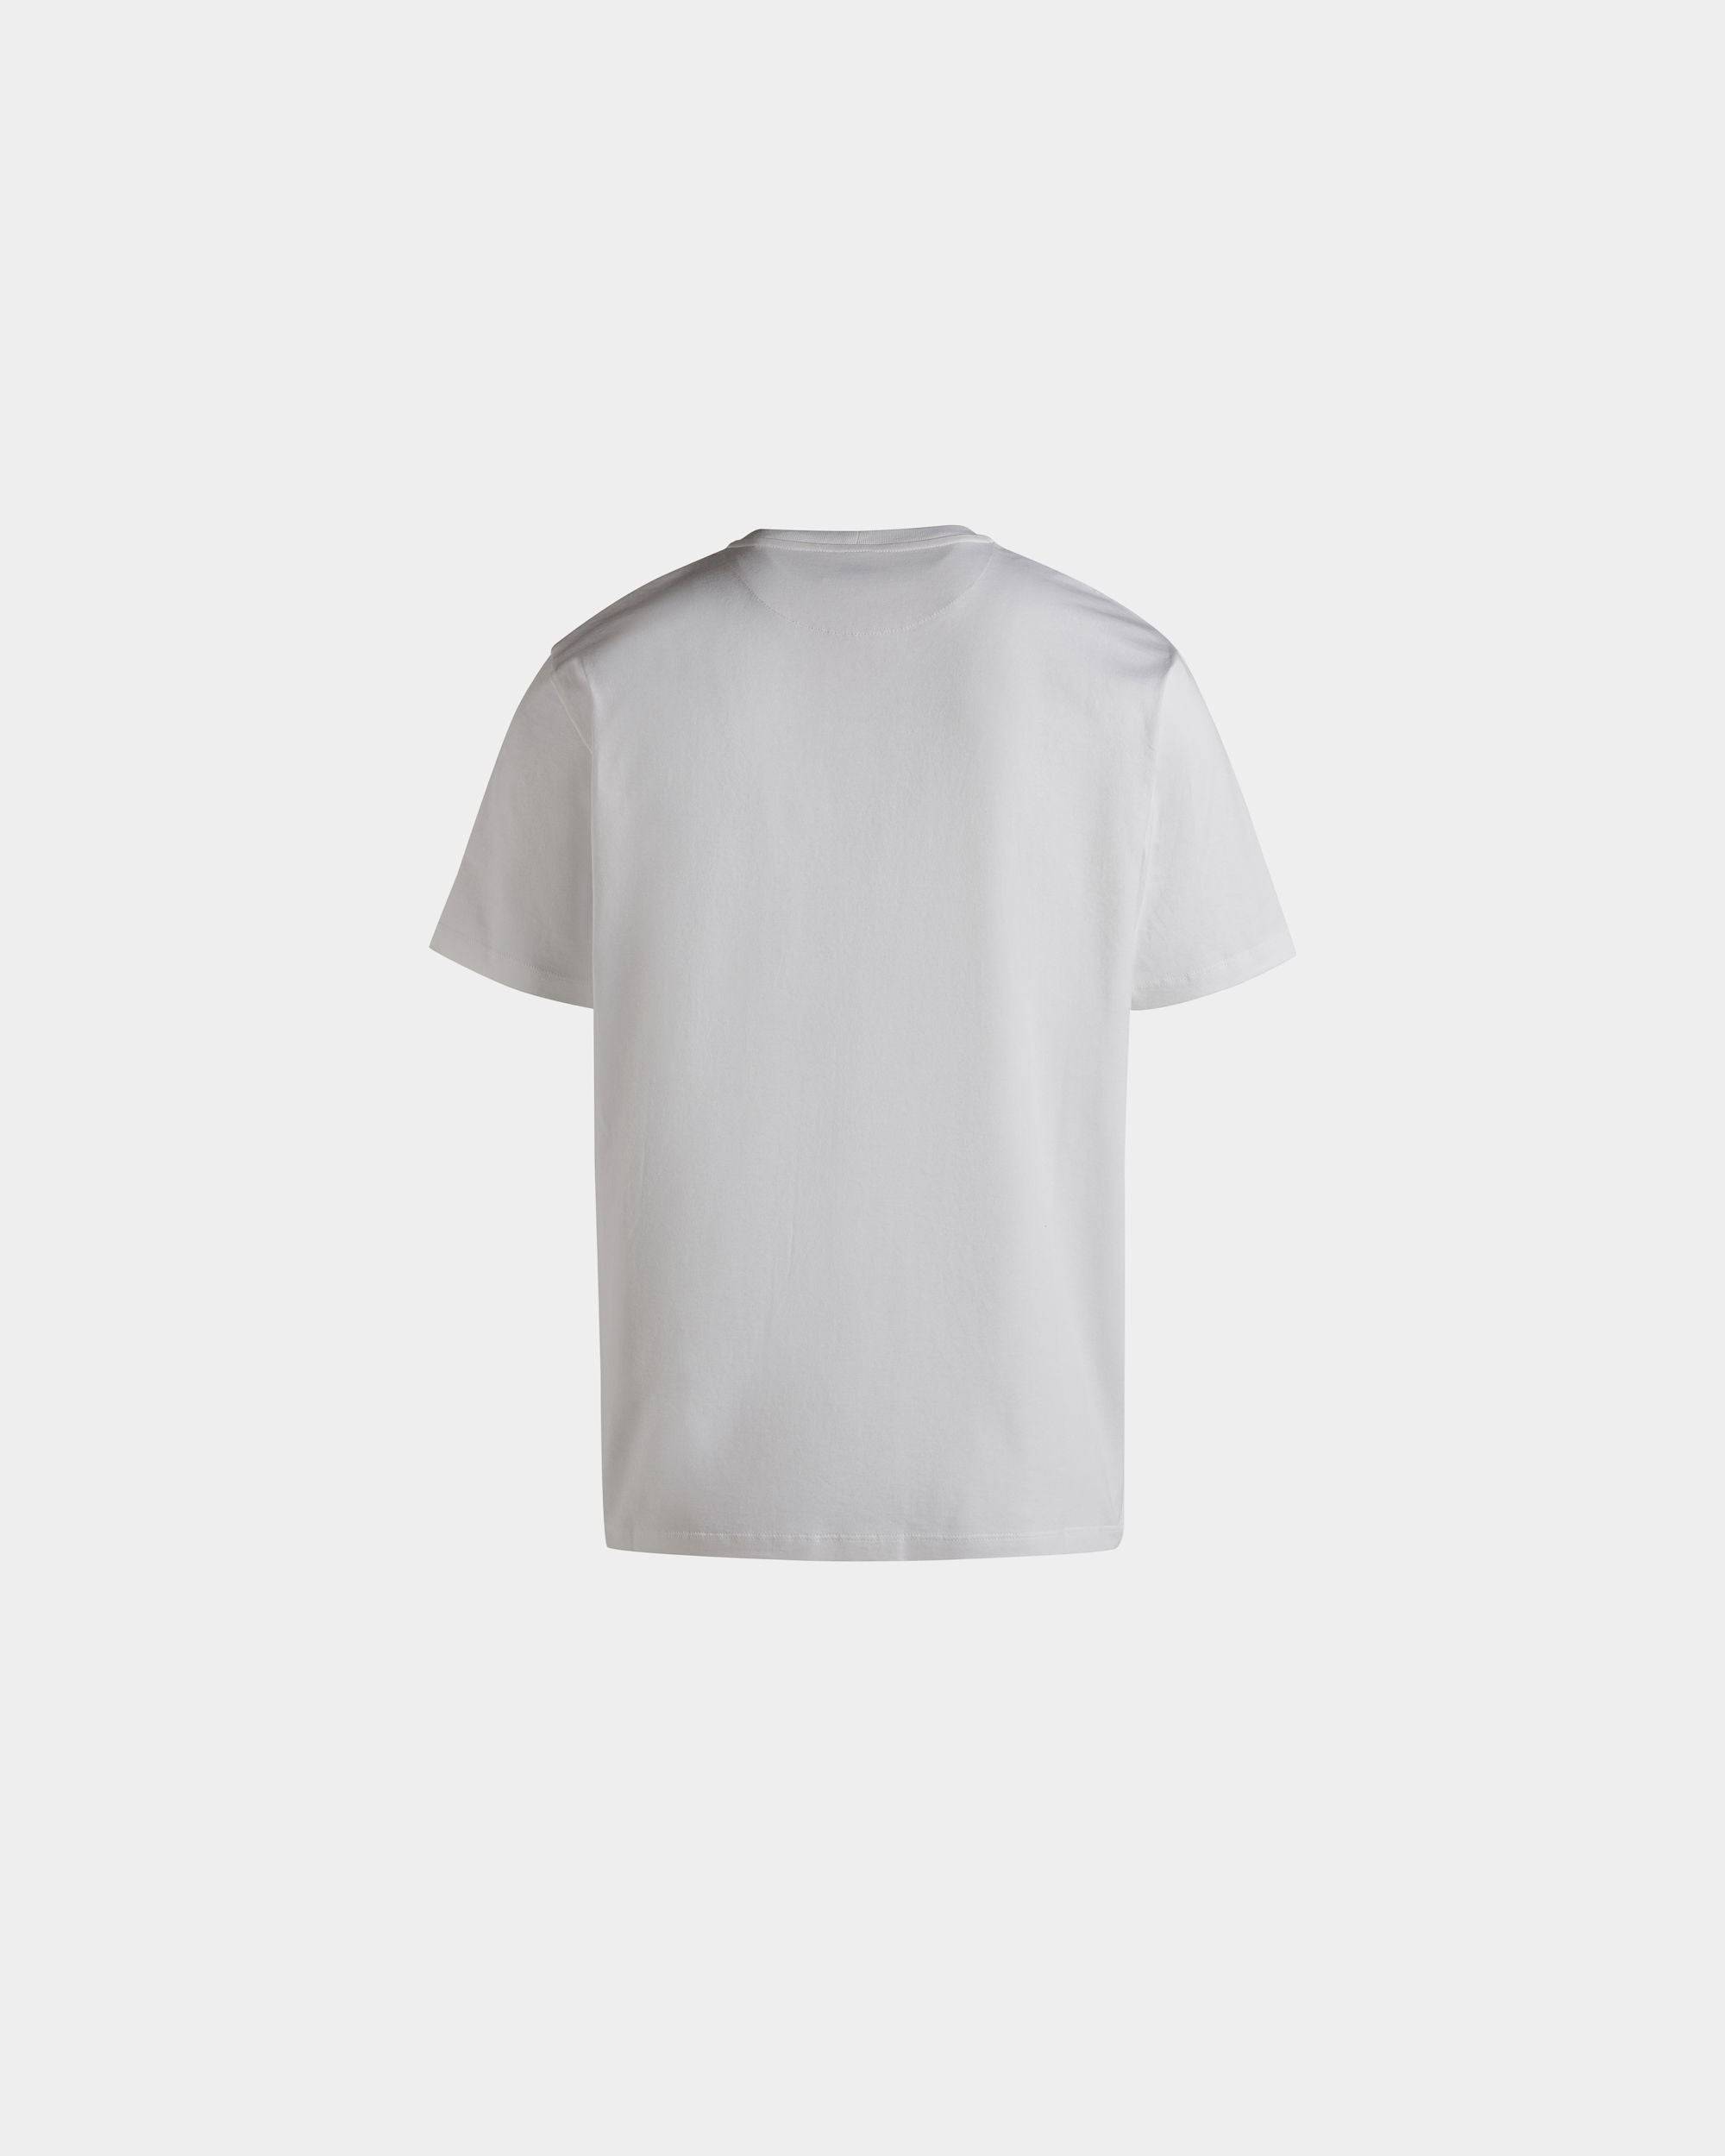 Herren-T-Shirt aus weißer Baumwolle | Bally | Still Life Rückseite